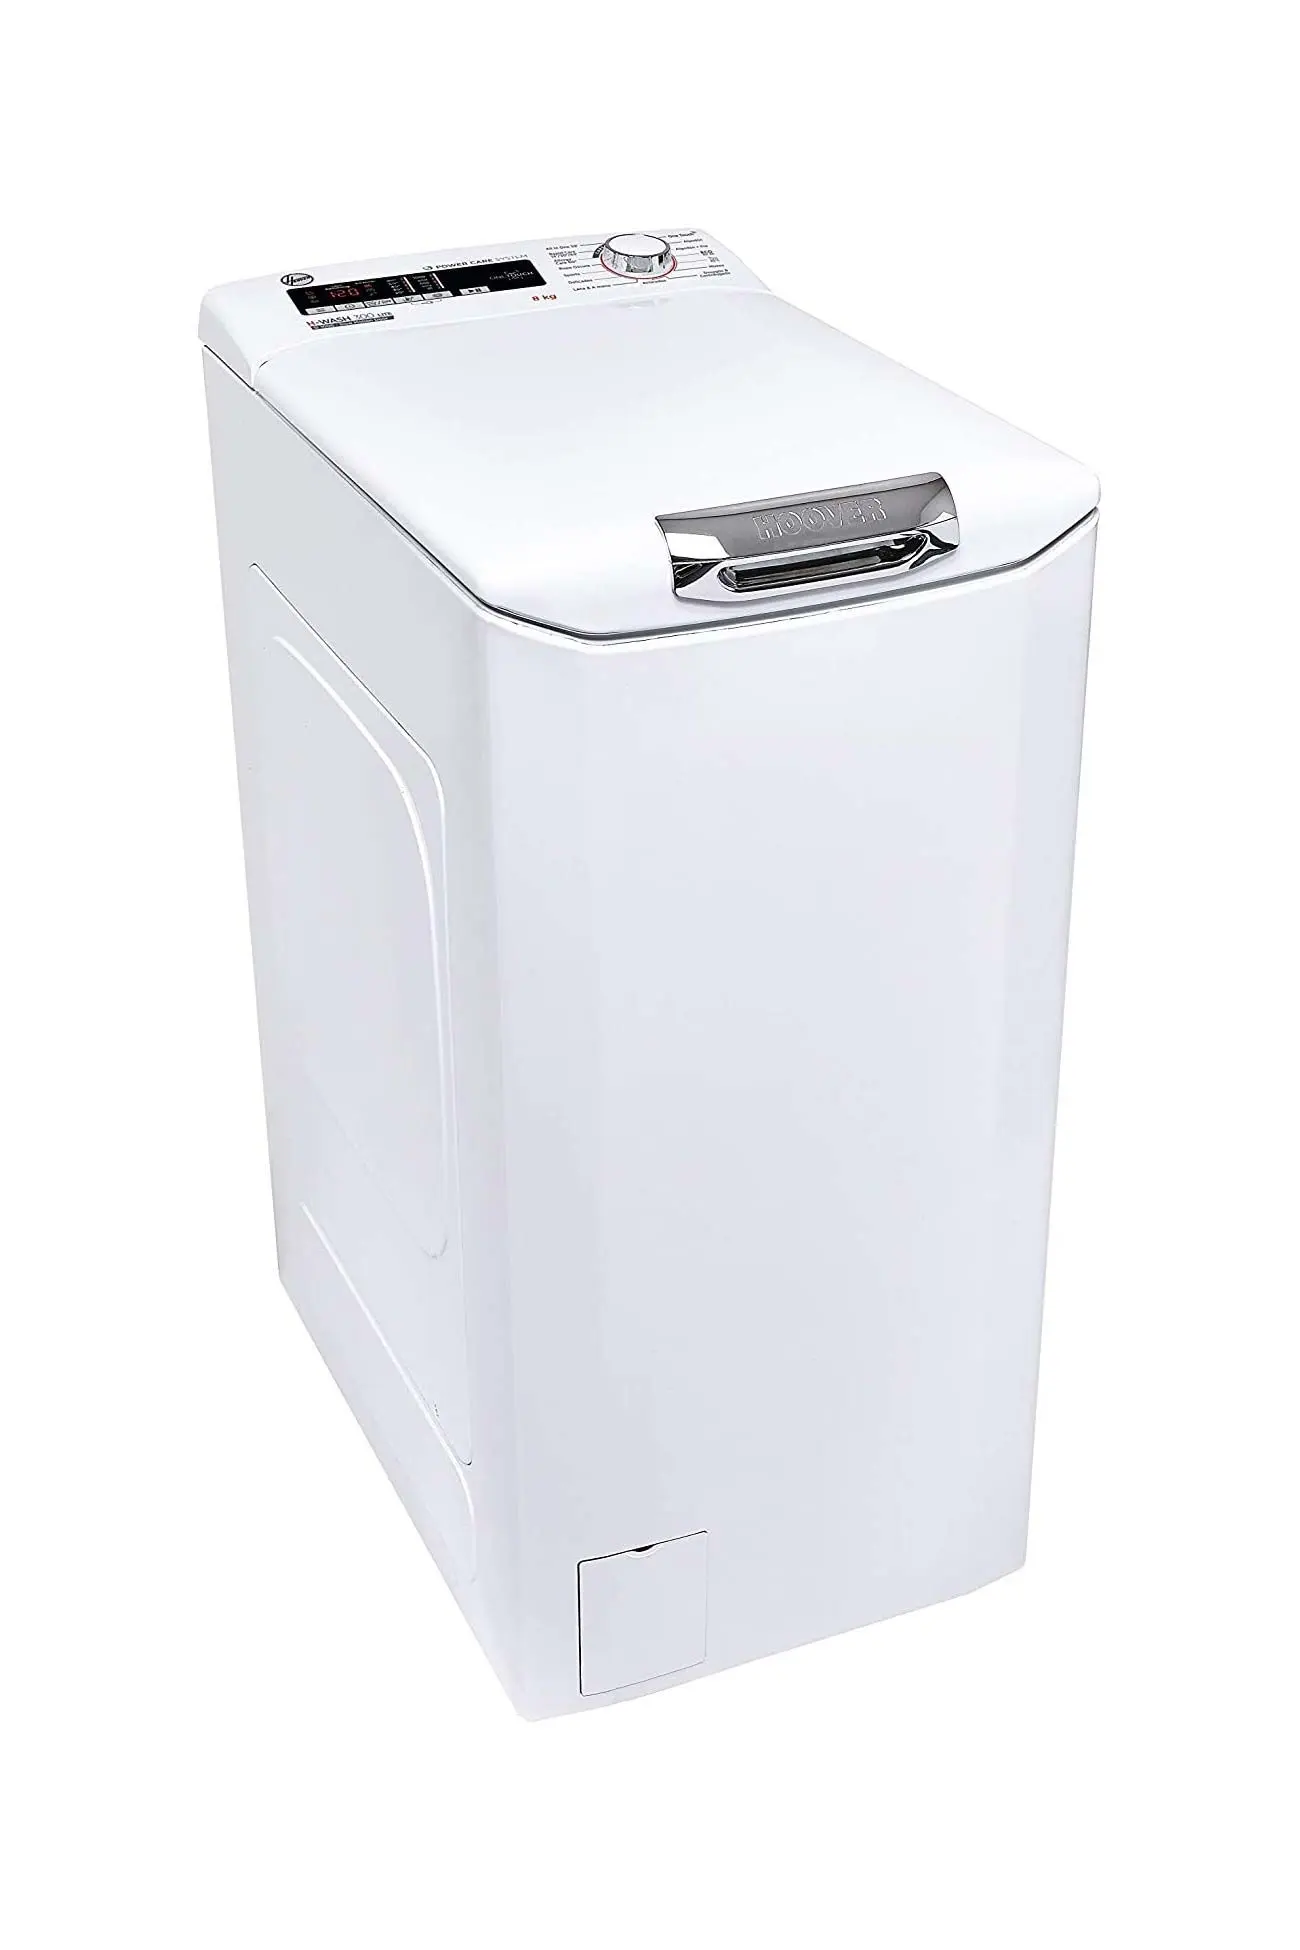 secadoras estrechas carga superior - Qué es una secadora de carga superior